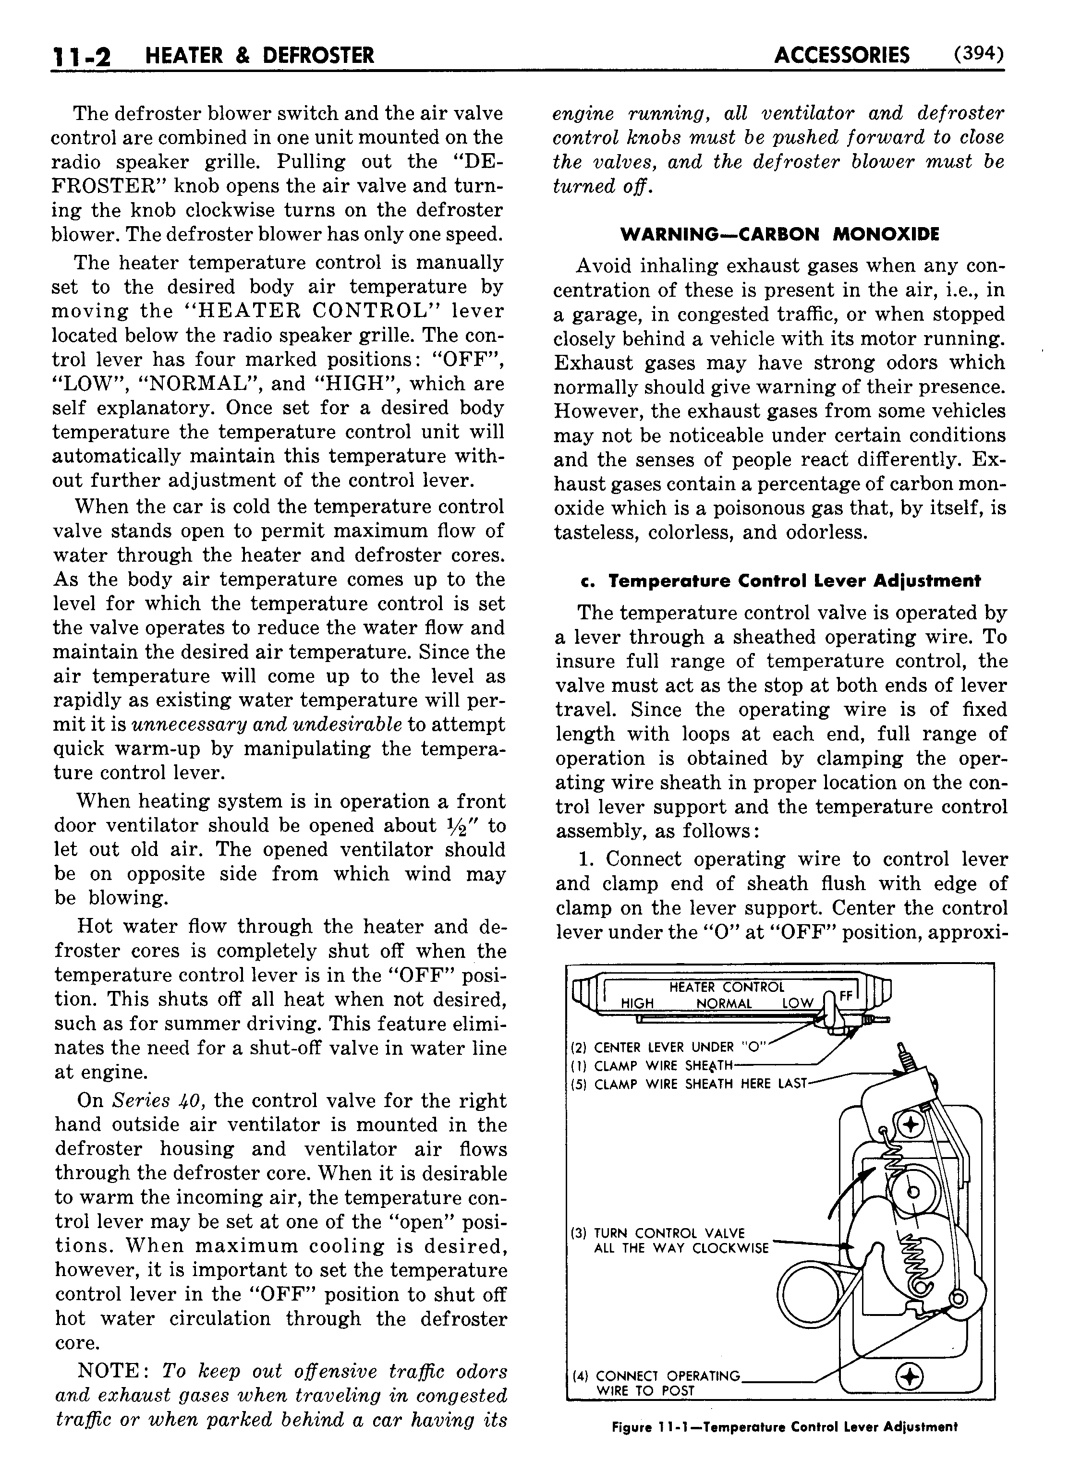 n_12 1951 Buick Shop Manual - Accessories-002-002.jpg